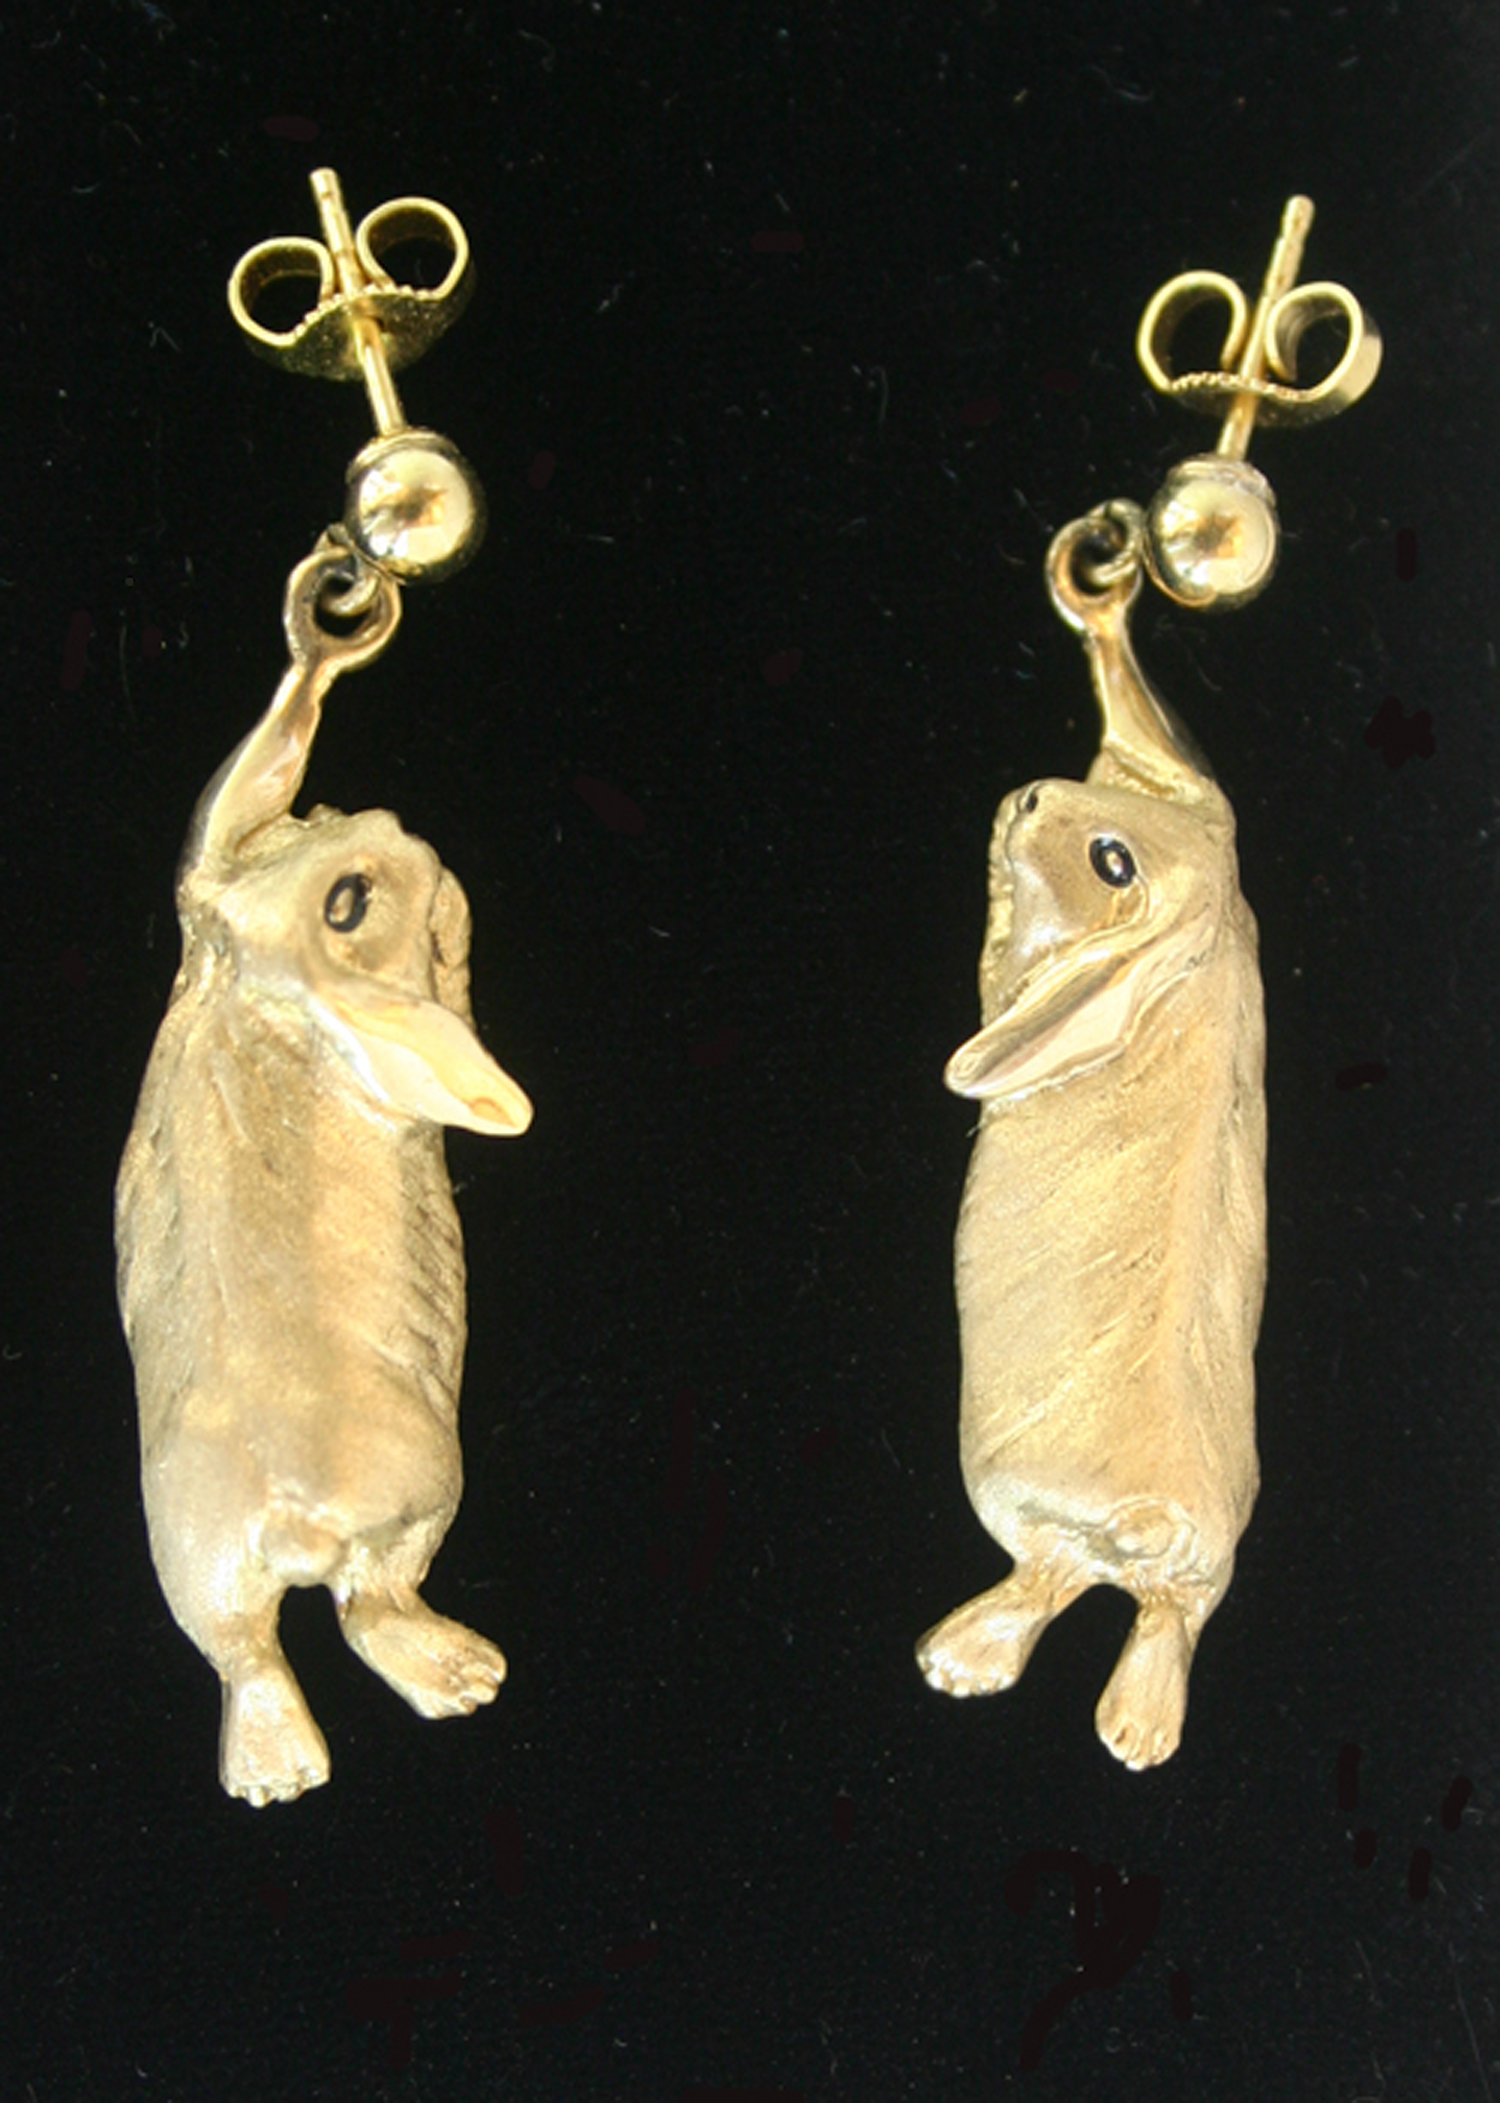 Rabbits: Holland Lop Earrings 14k